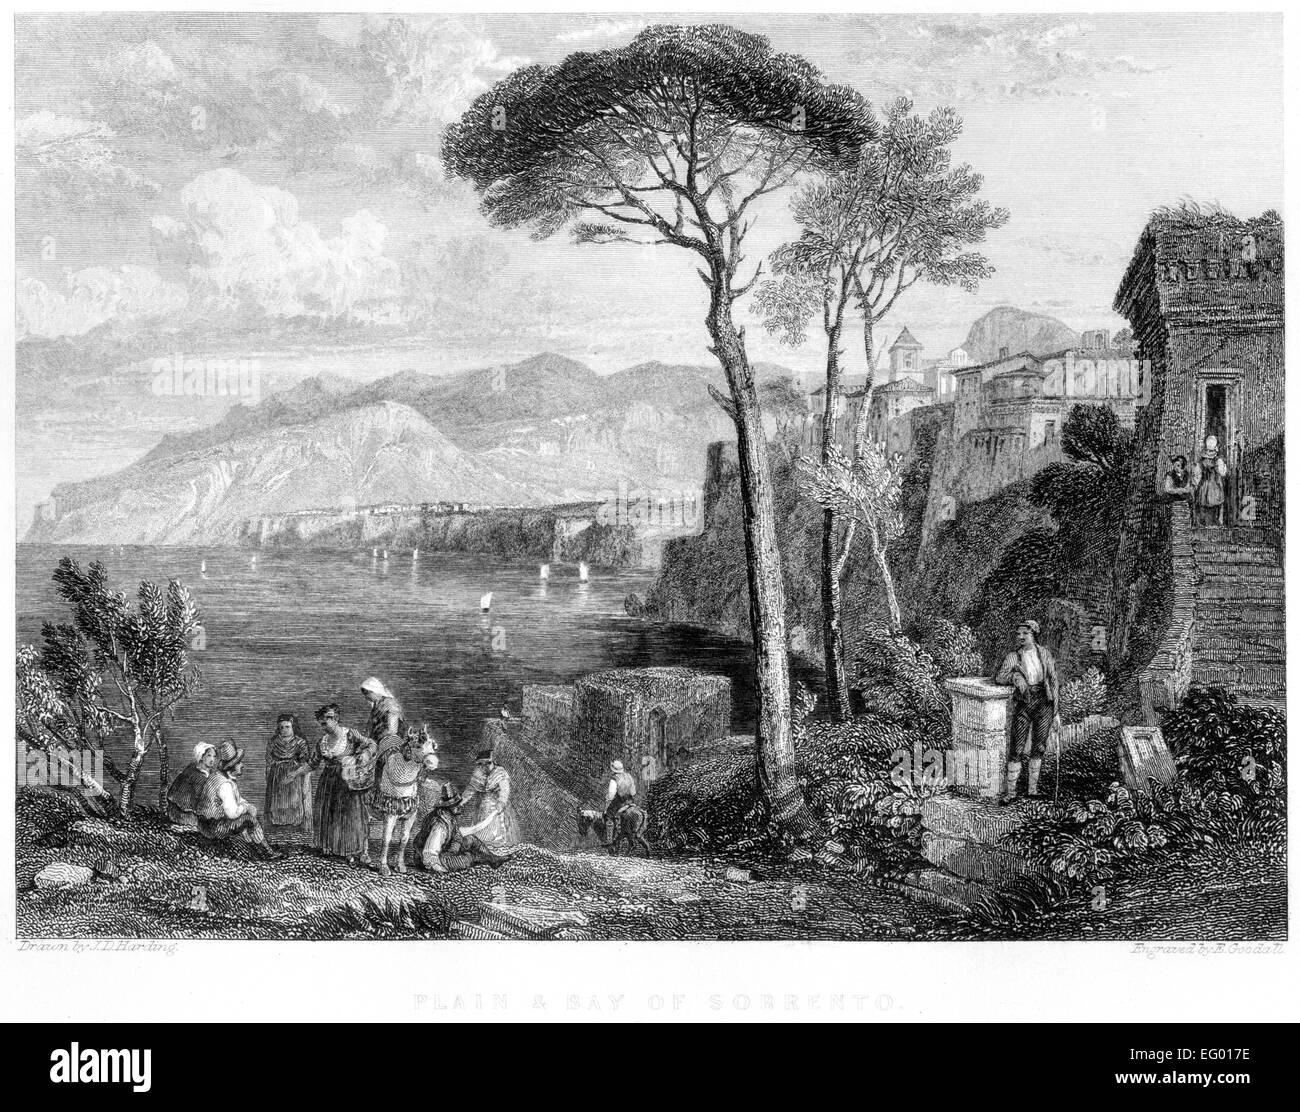 Ein Stich der Tiefebene und Bucht von Sorrento, Italien, gescannt in hoher Auflösung aus einem Buch, das 1845 gedruckt wurde. Für urheberrechtlich frei gehalten. Stockfoto